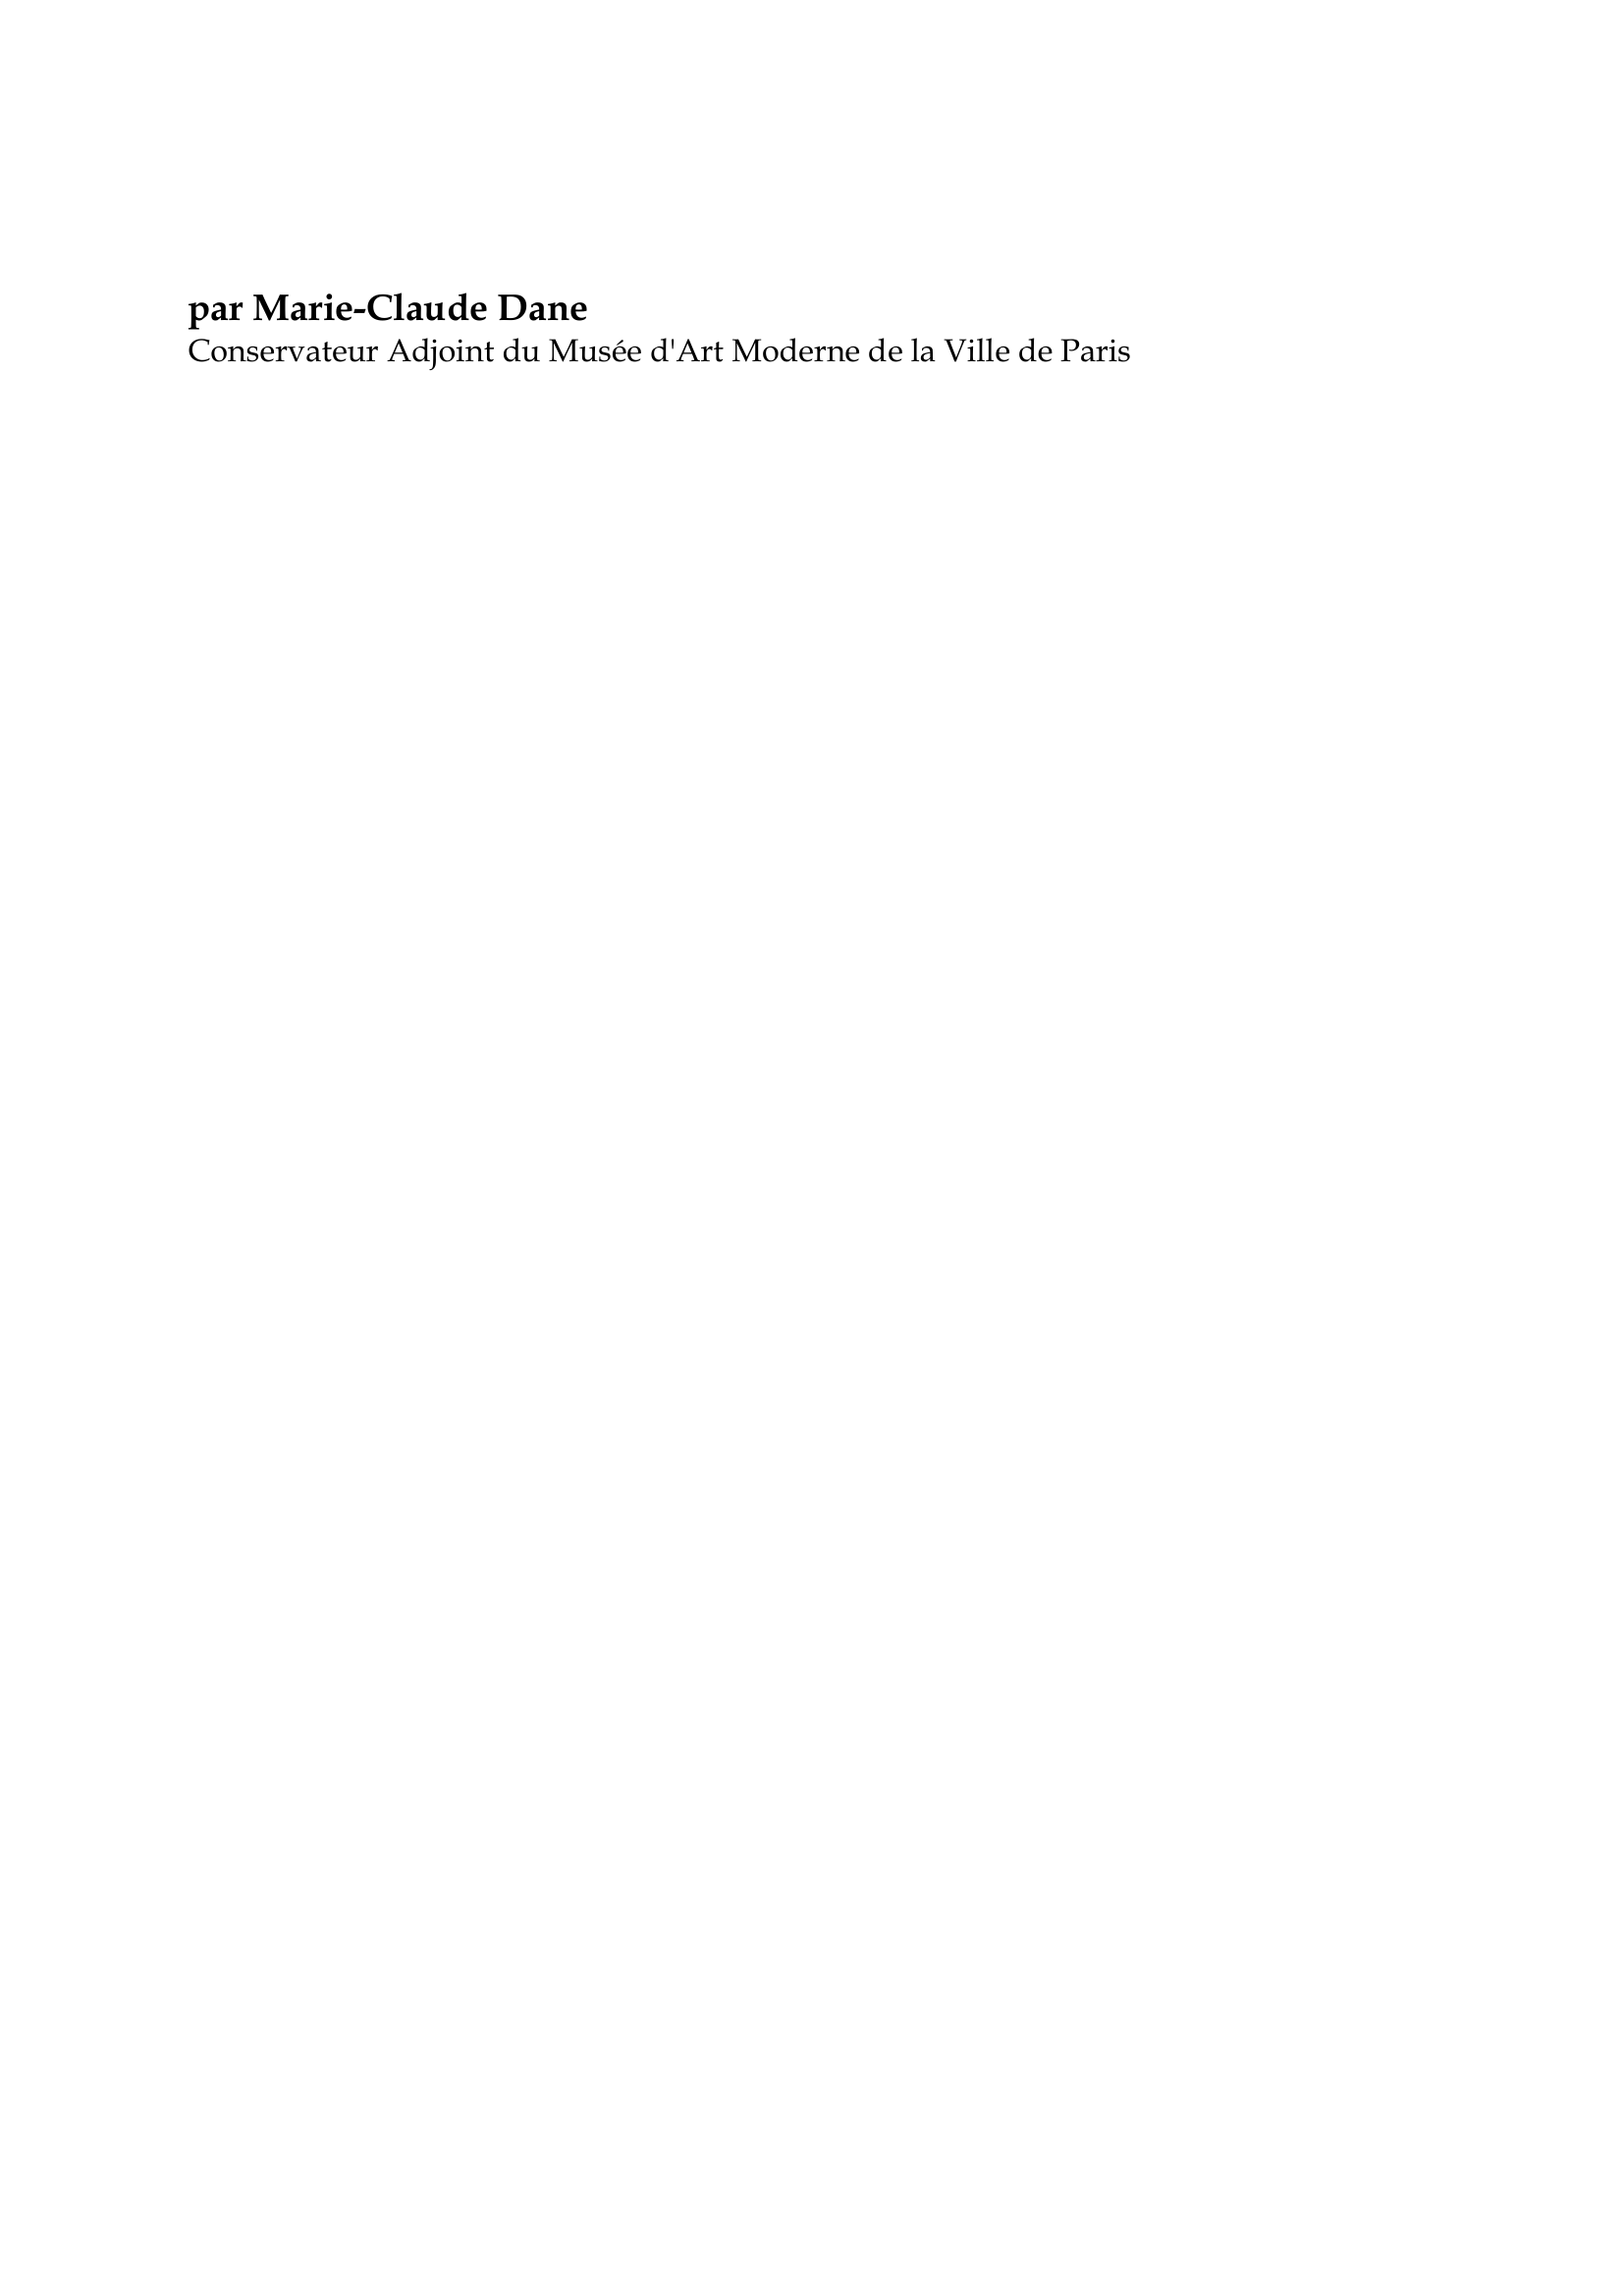 Prévisualisation du document Mark Rothko

par Marie-Claude Dane
Conservateur Adjoint du Musée d'Art Moderne de la Ville de Paris

Né à Dvinsk, en Russie, non loin de la frontière polonaise, Mark Rothko
suivra sa famille à Portland, Oregon, en 1913 et terminera ses études à
l'université Yale.